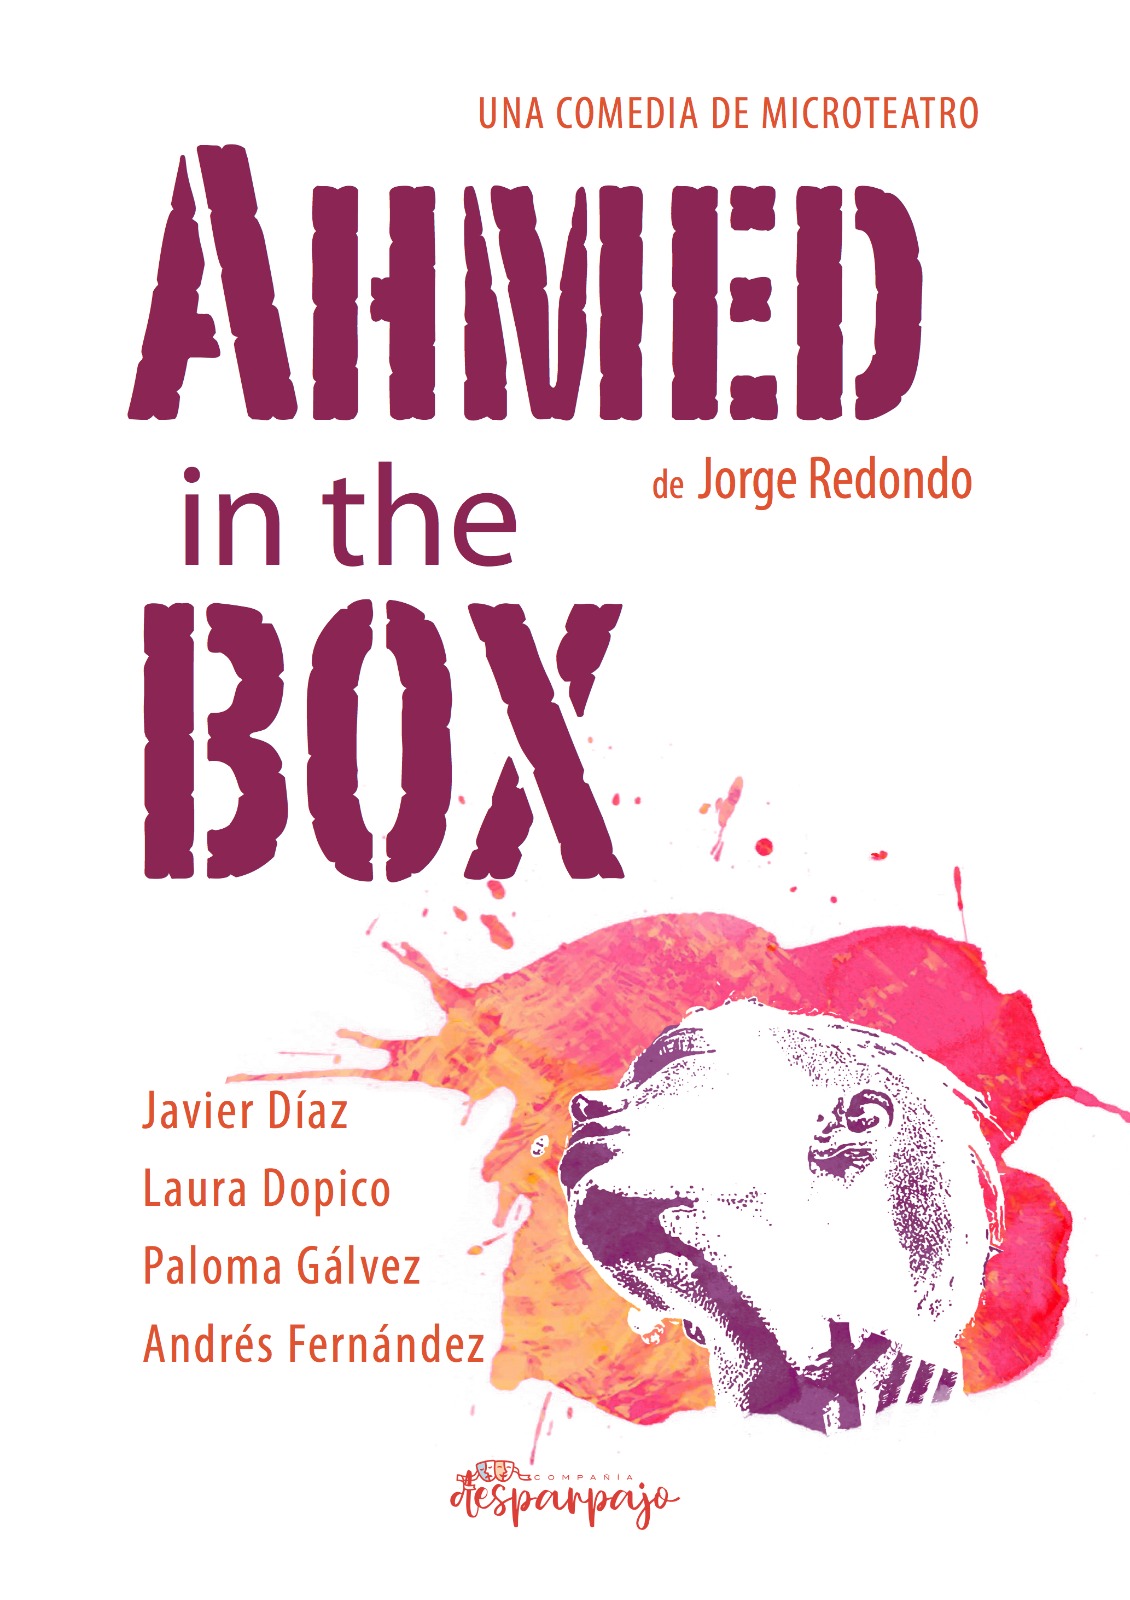 Ahmed in the box – El 24 de febrero en Factoría Cultural de Tres Cantos